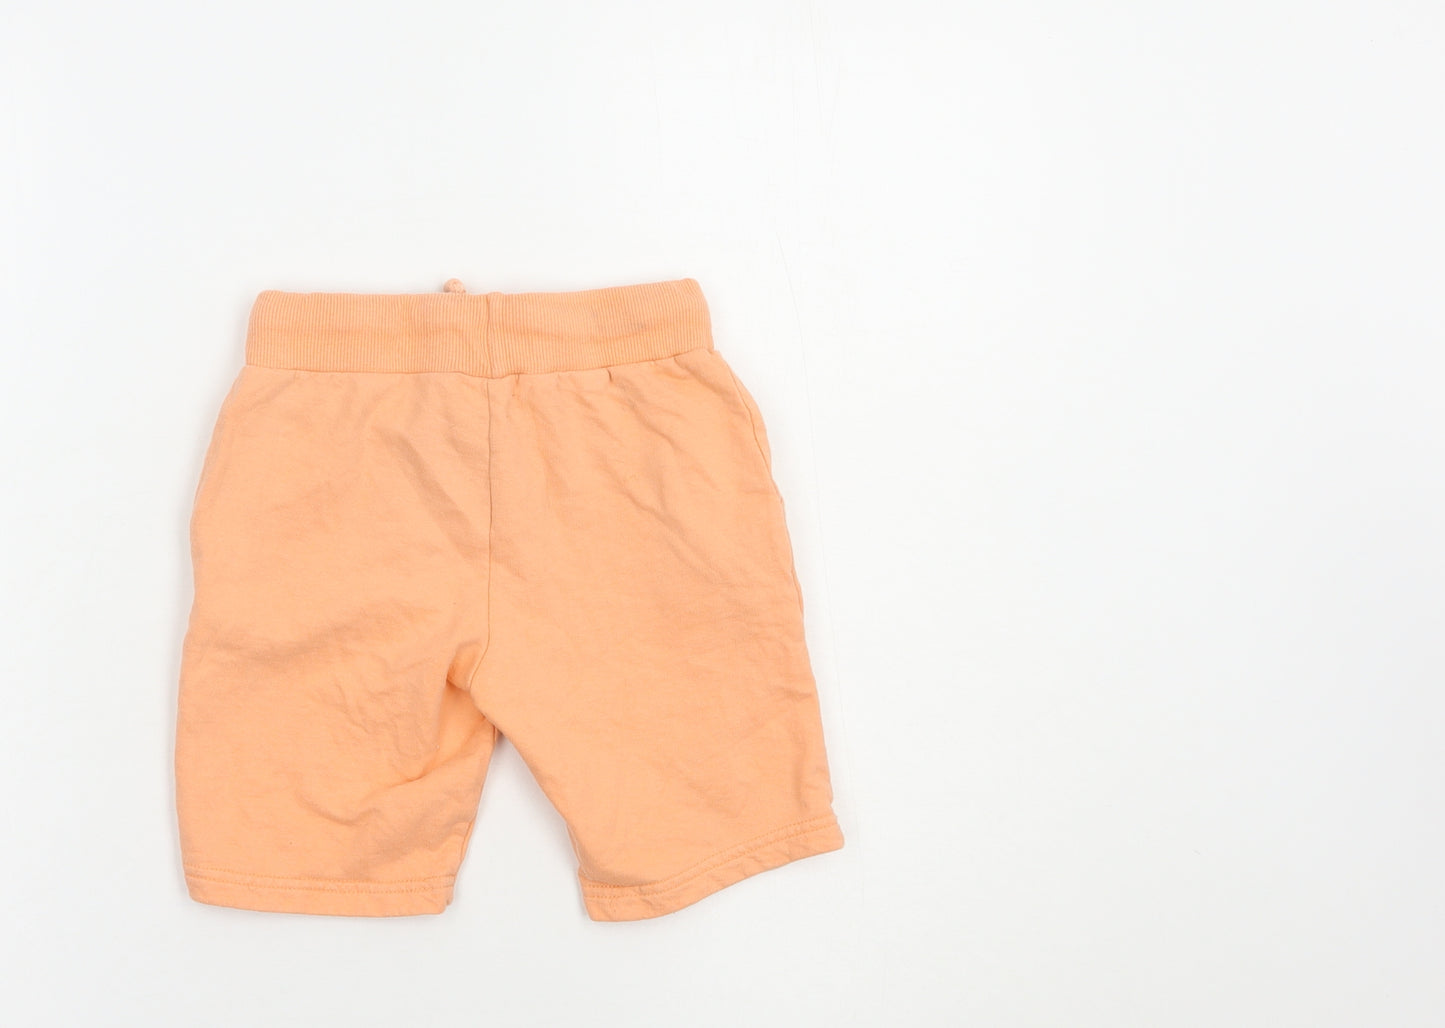 Studio Boys Orange  Cotton Sweat Shorts Size 5-6 Years  Regular Drawstring